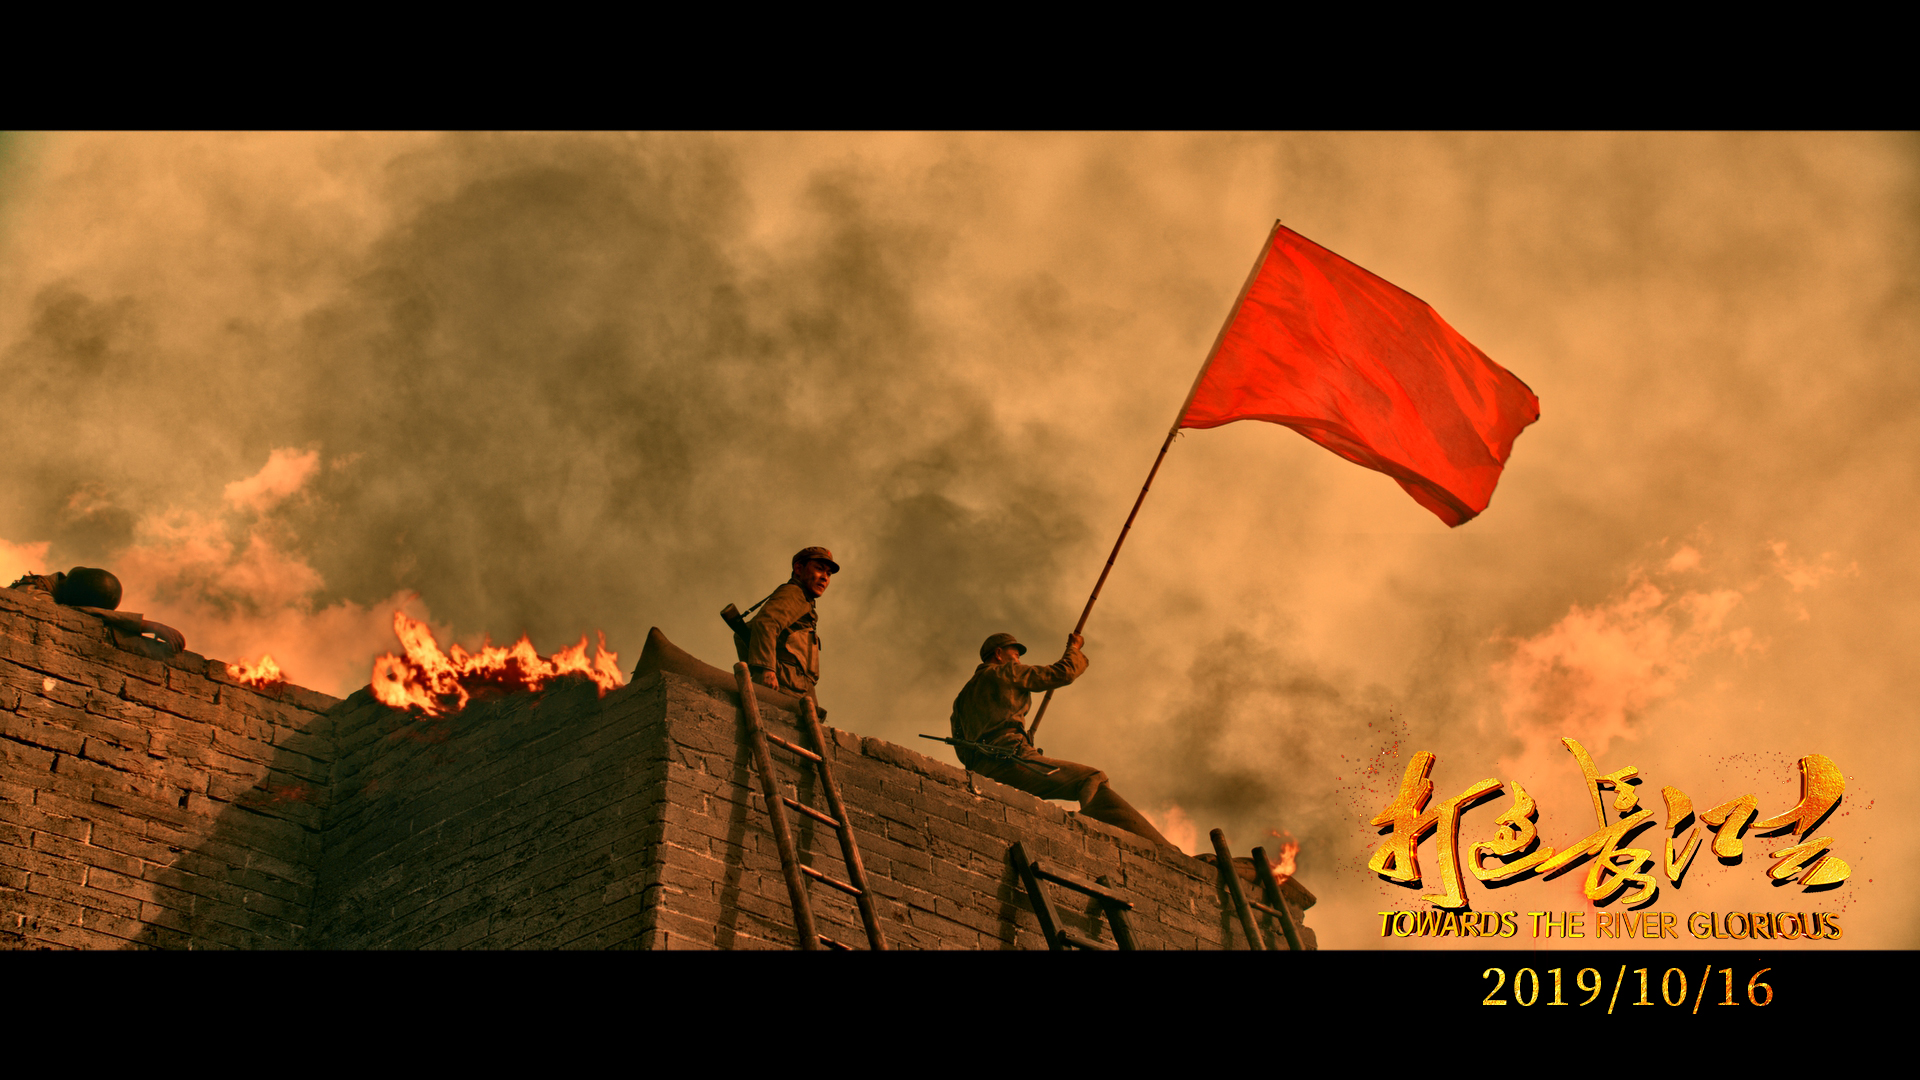 大明星 没有大明星,但《打过长江去》是今年最燃的战争大片!